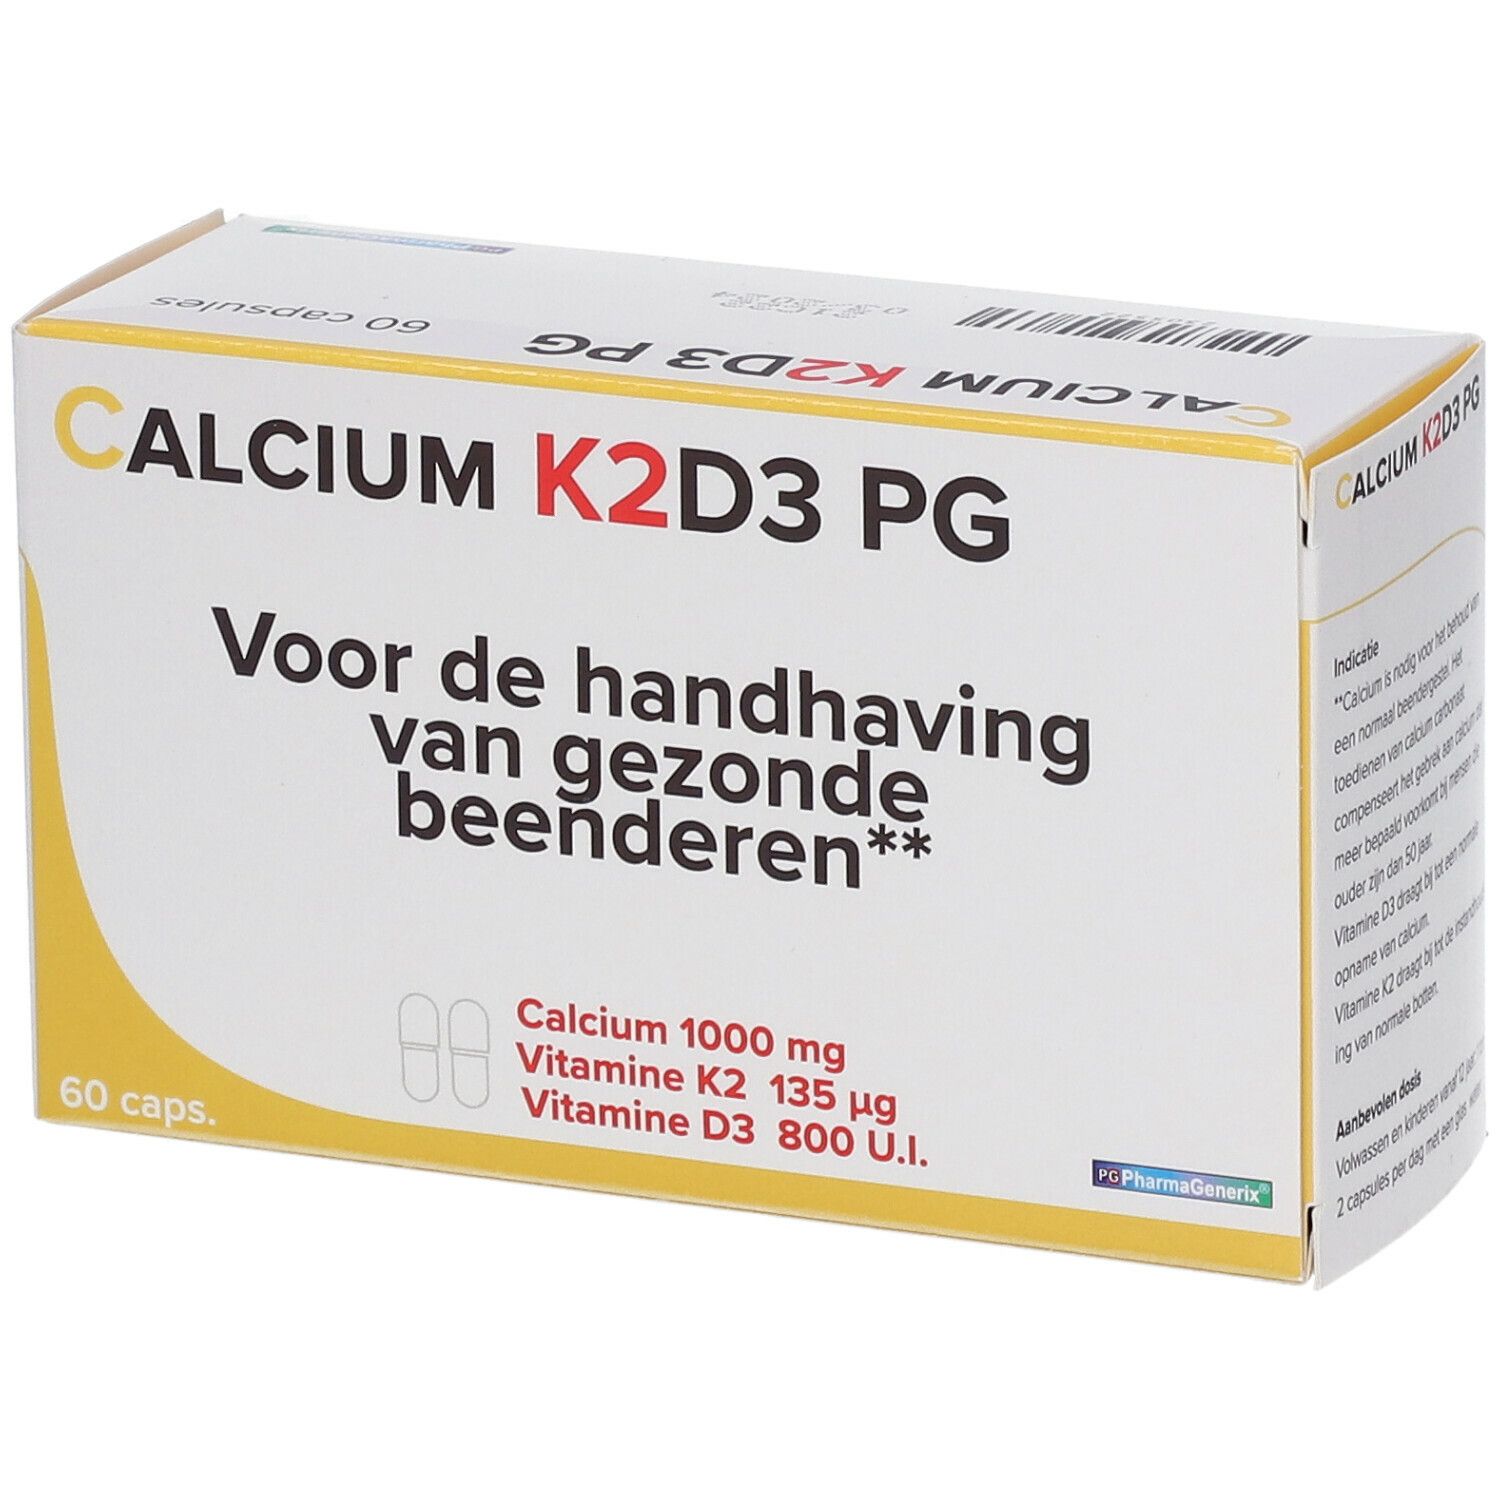 Calcium K2D3 PG